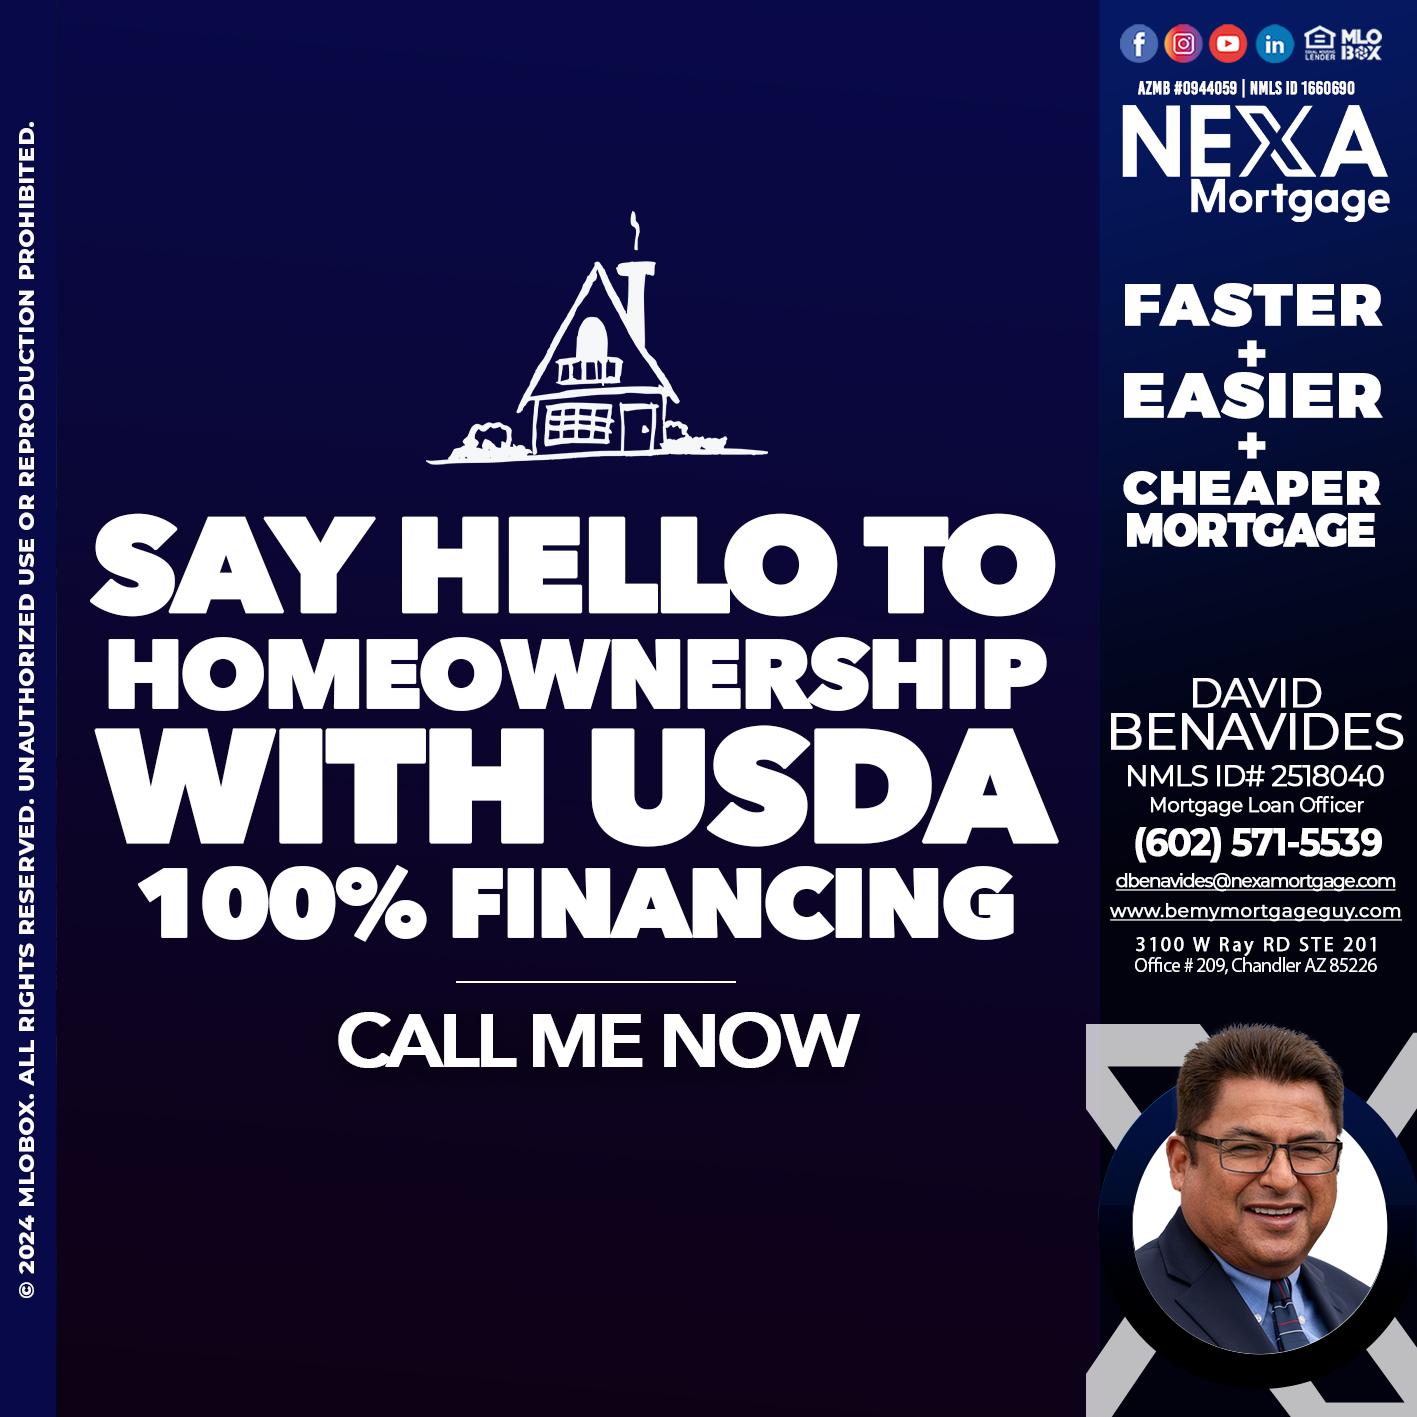 SAY HELLO - David Benavides -Mortgage Loan Officer